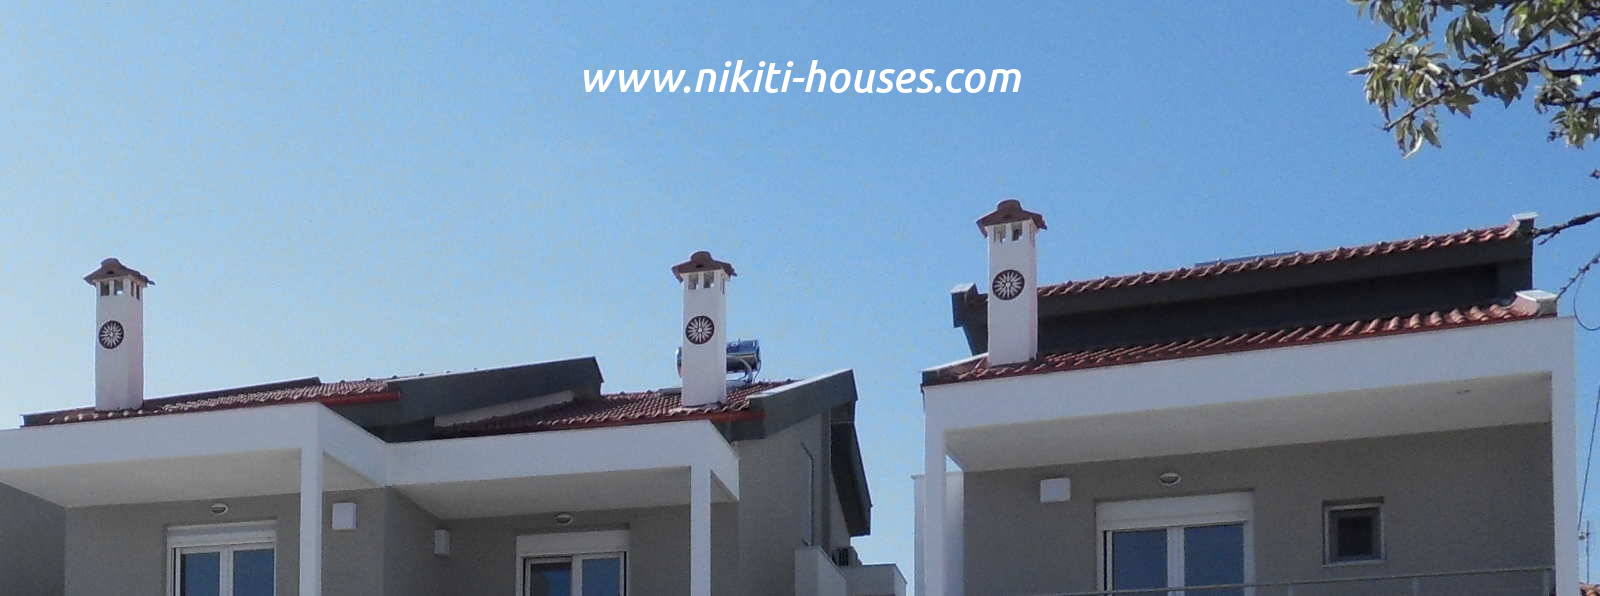 nikiti houses